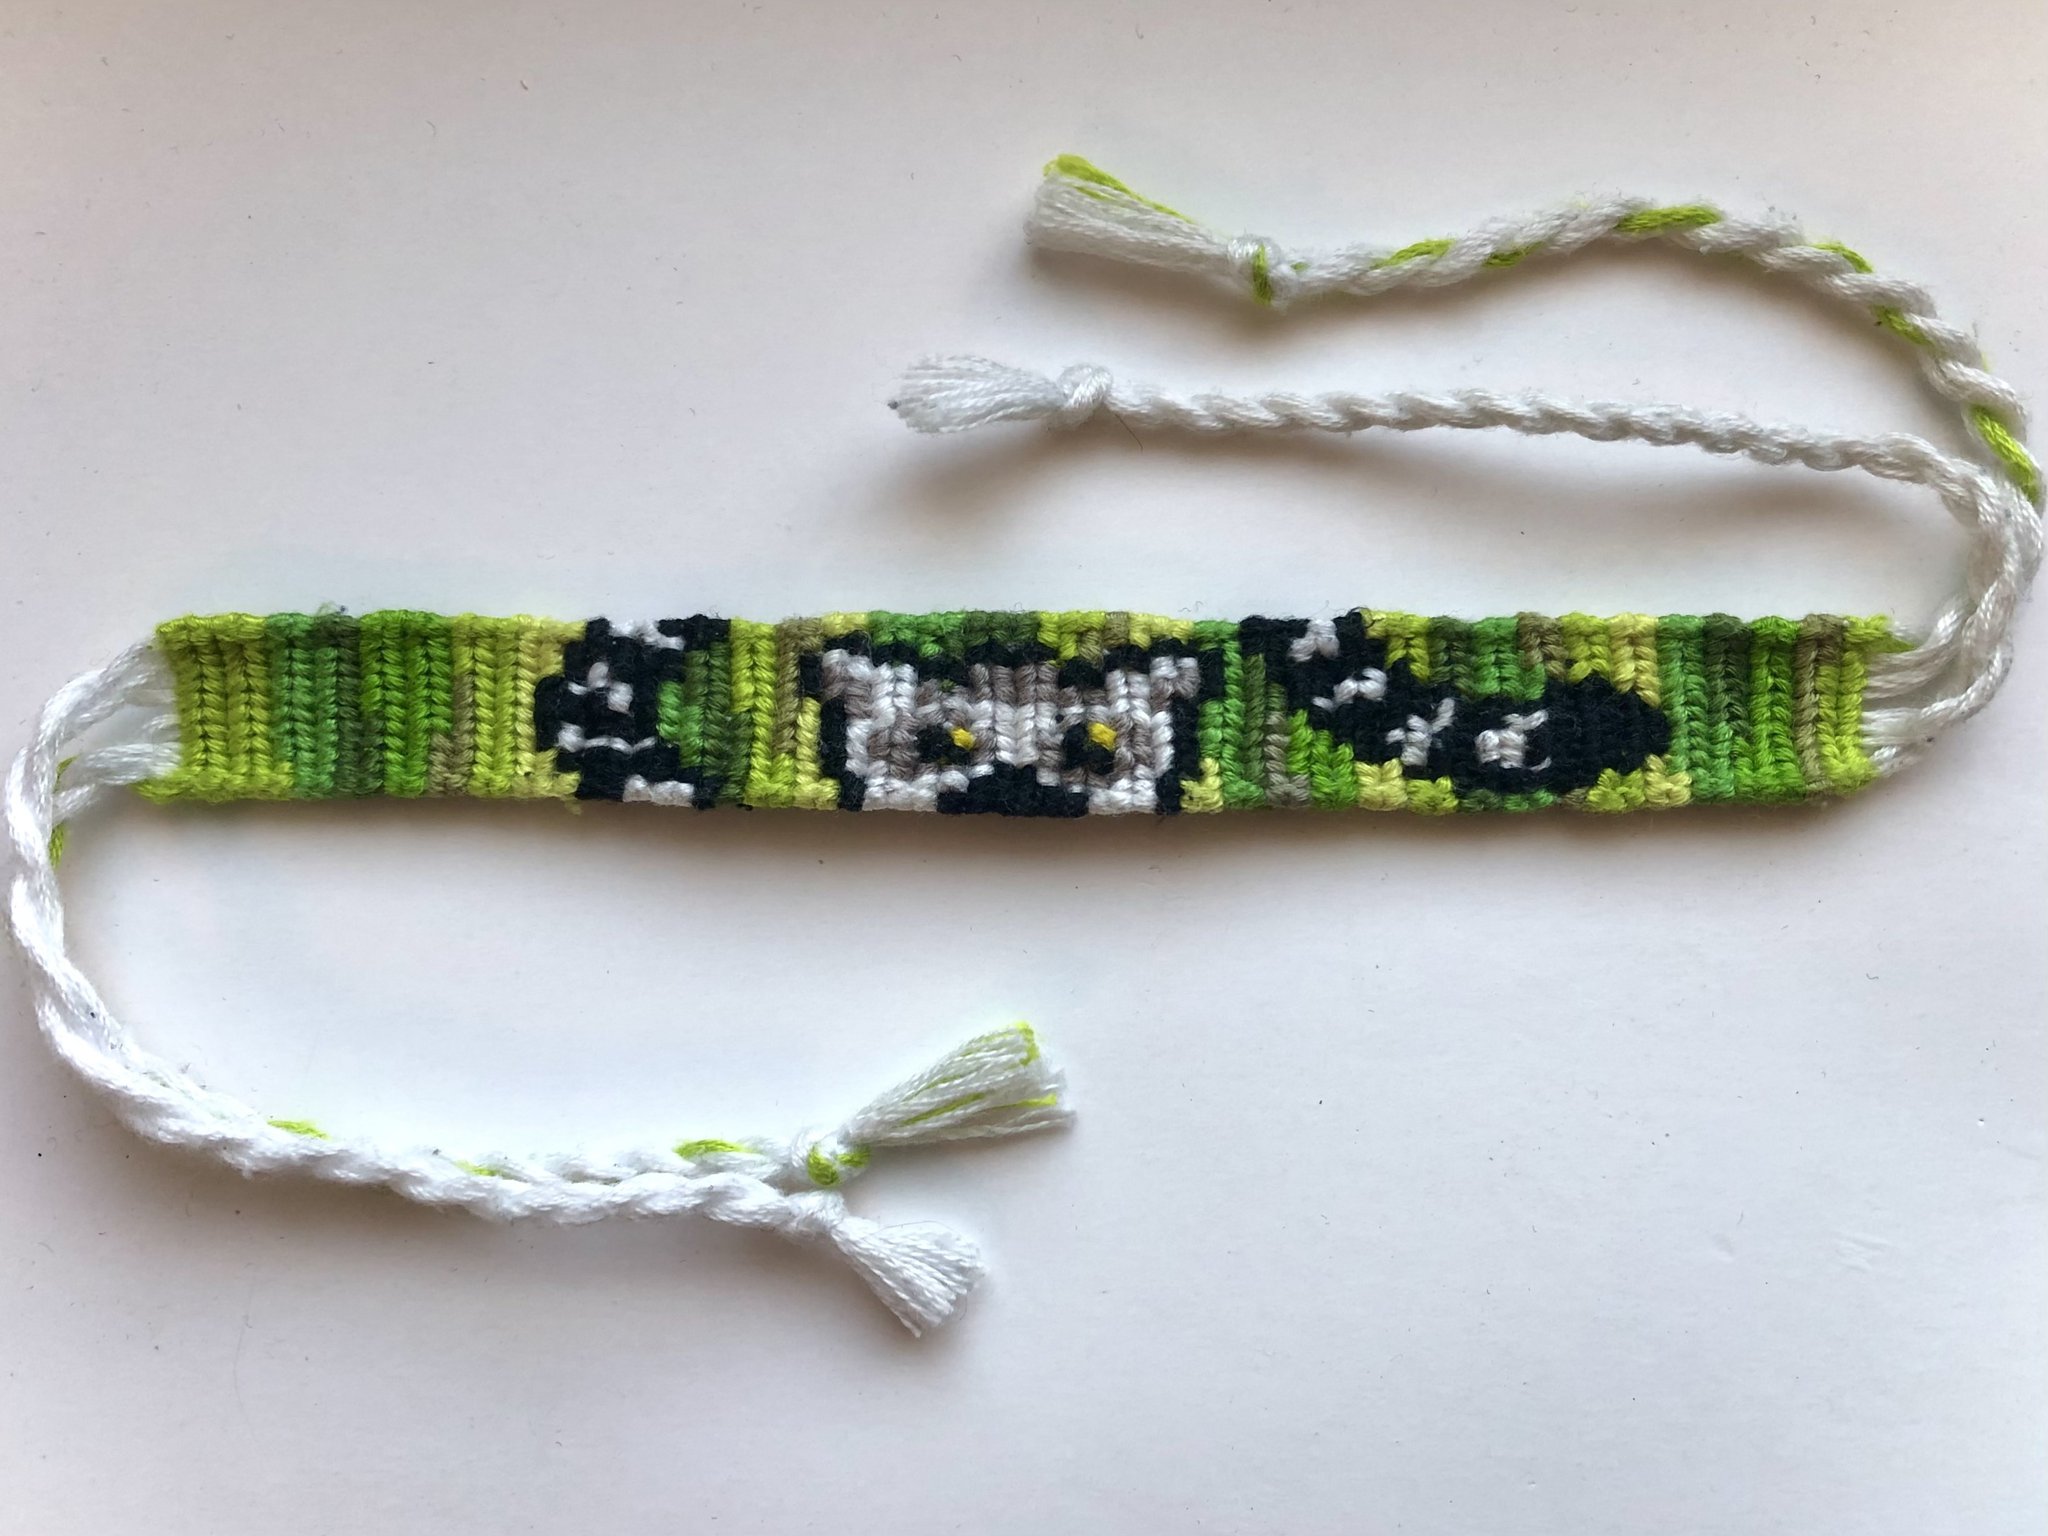 Easy crochet Friendship Bracelet - YouTube